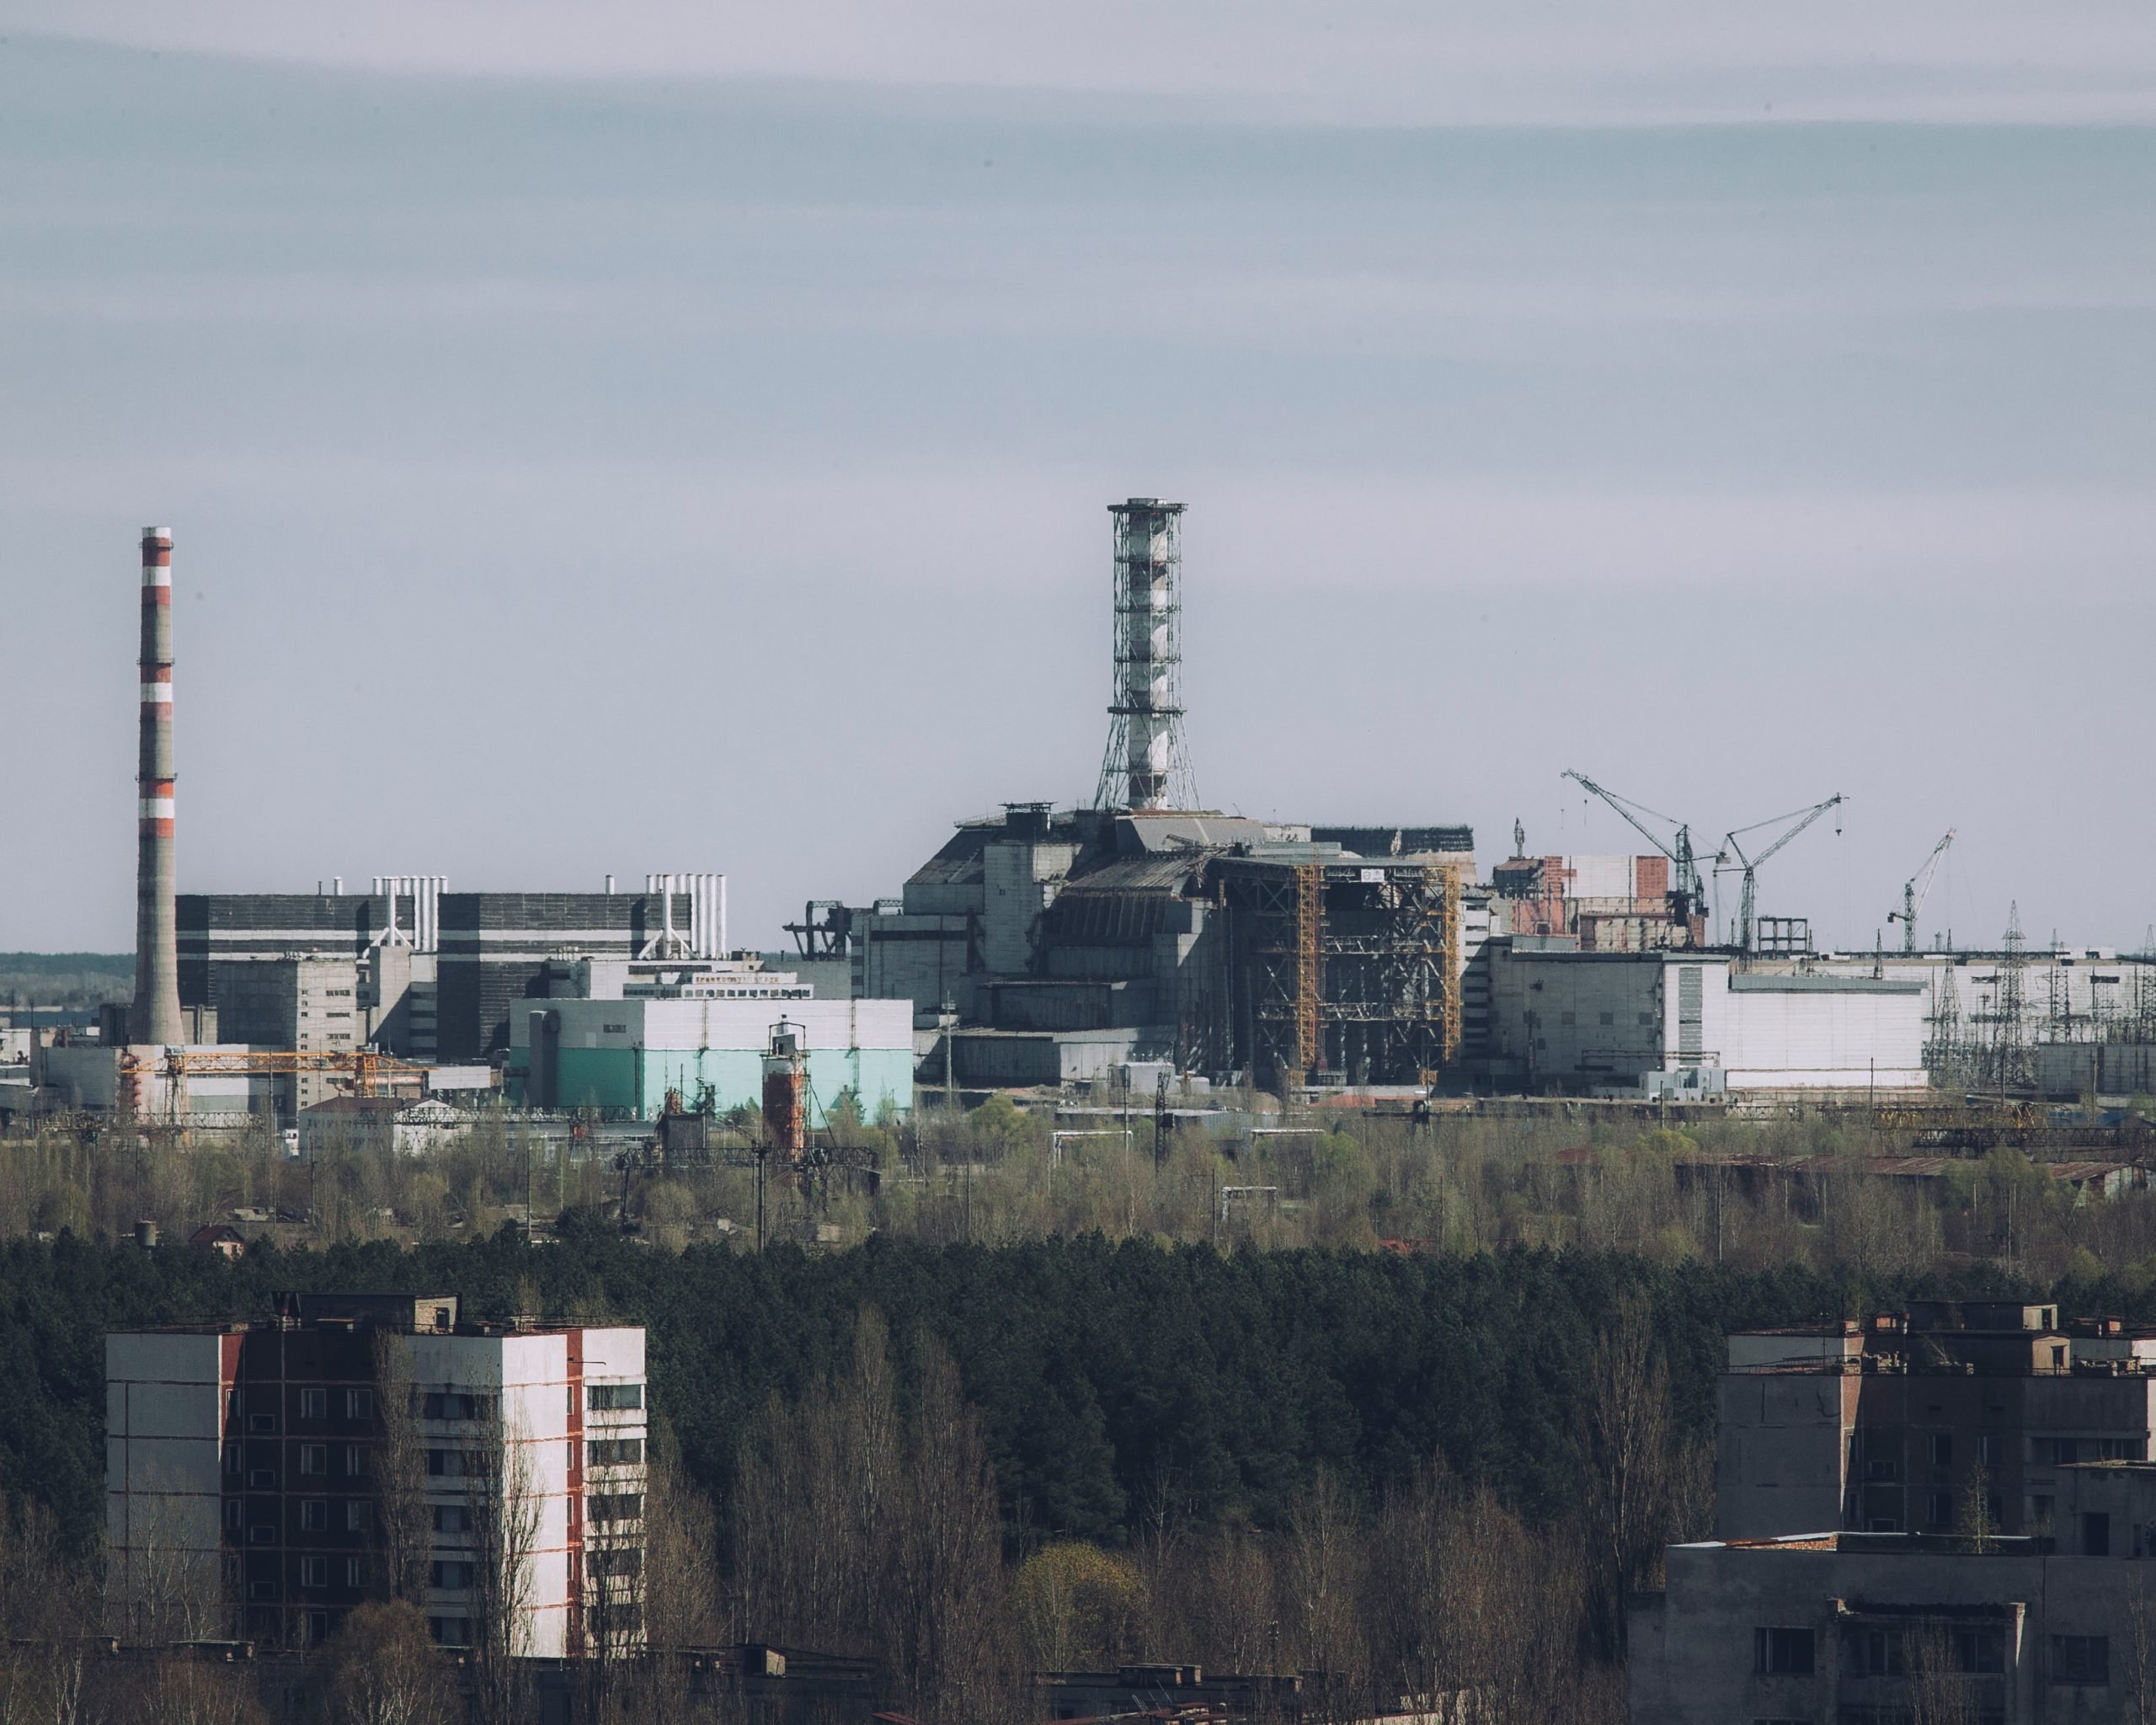 Quando il disastro di Chernobyl spaventò la provincia di Alessandria: il ricordo di Roberto Pascoli